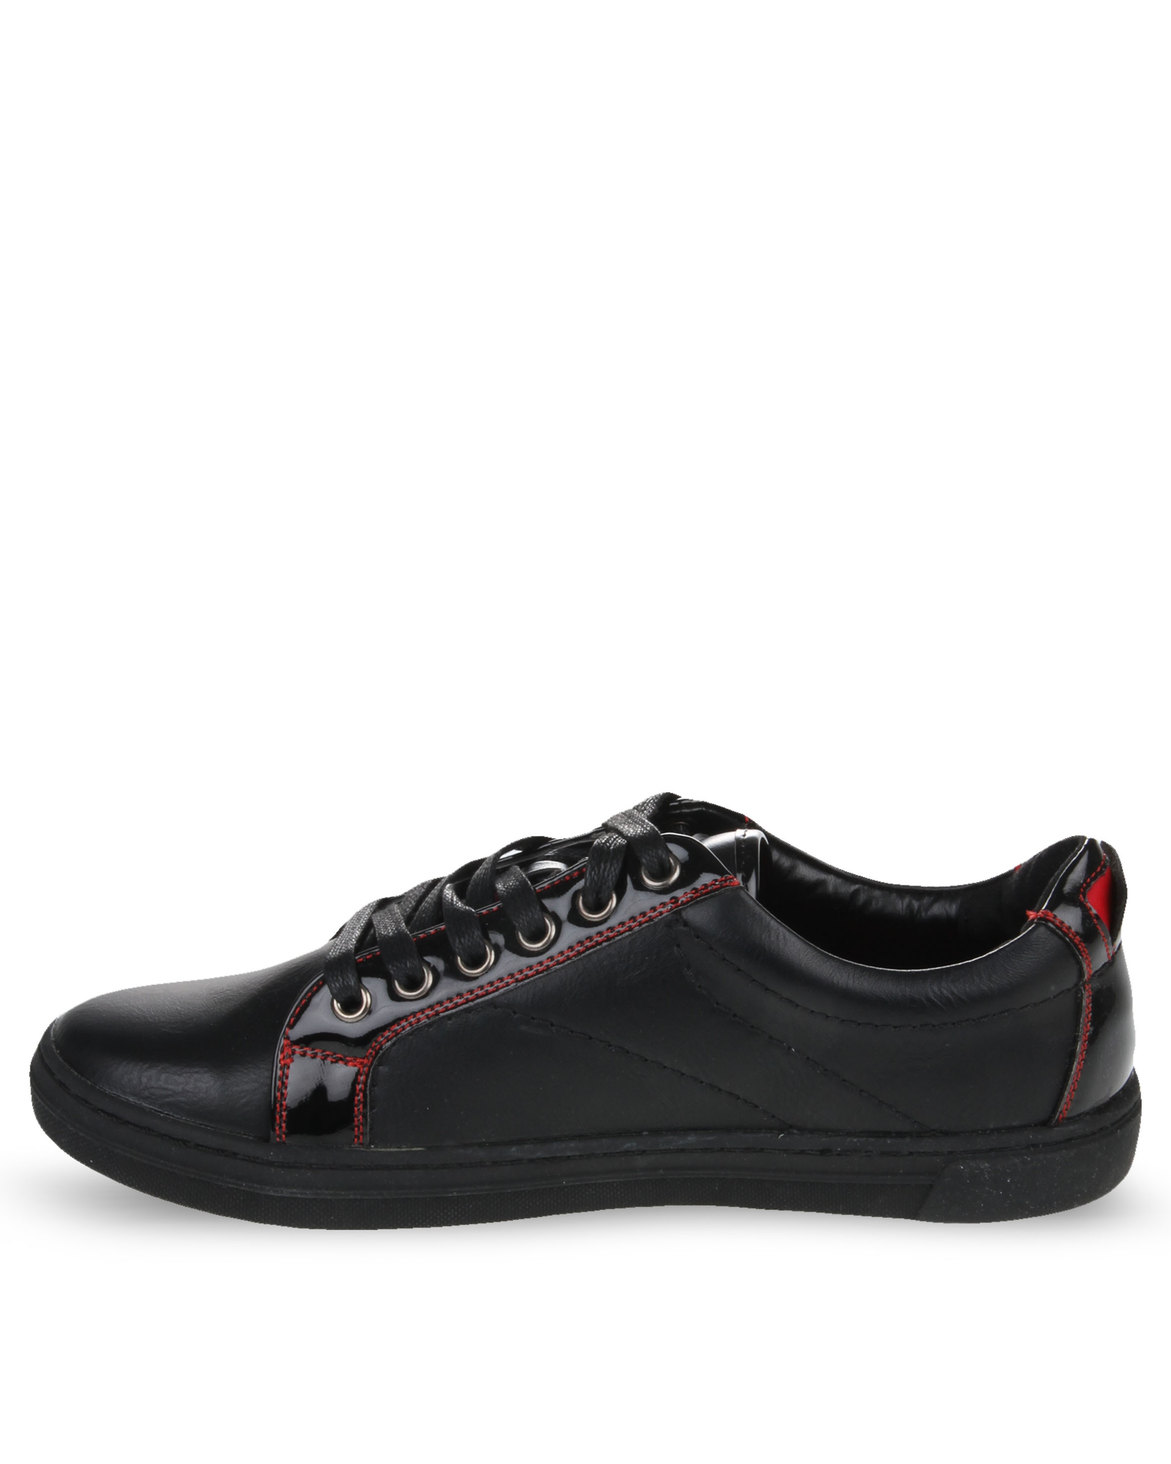 Mazerata Vanilla 1 Sneakers Black | Zando